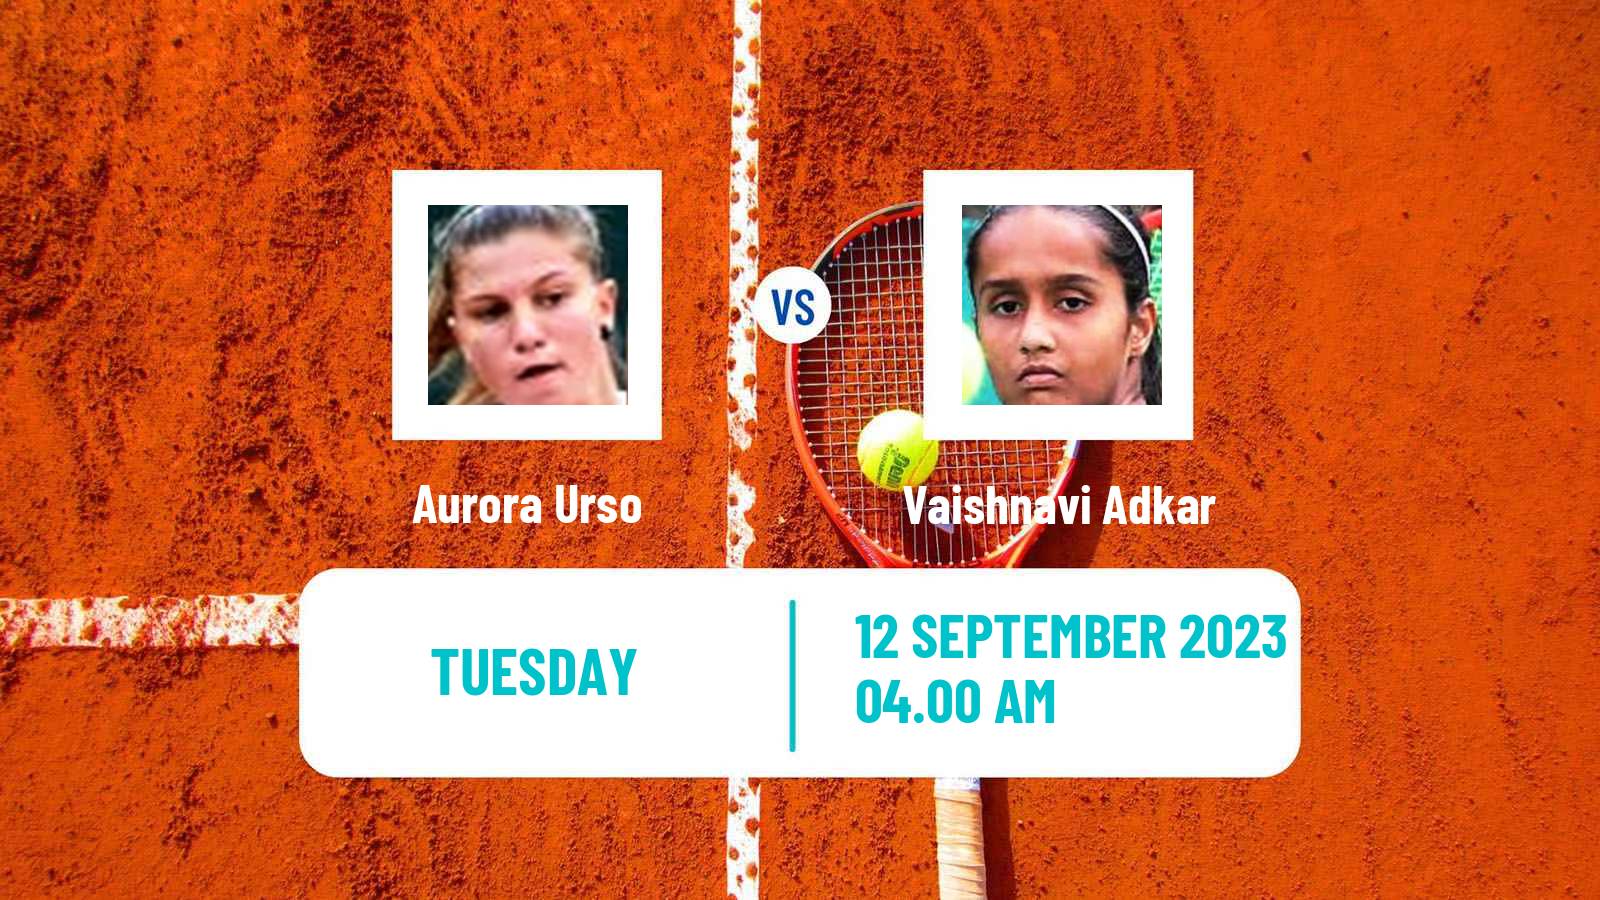 Tennis ITF W15 Monastir 51 Women Aurora Urso - Vaishnavi Adkar